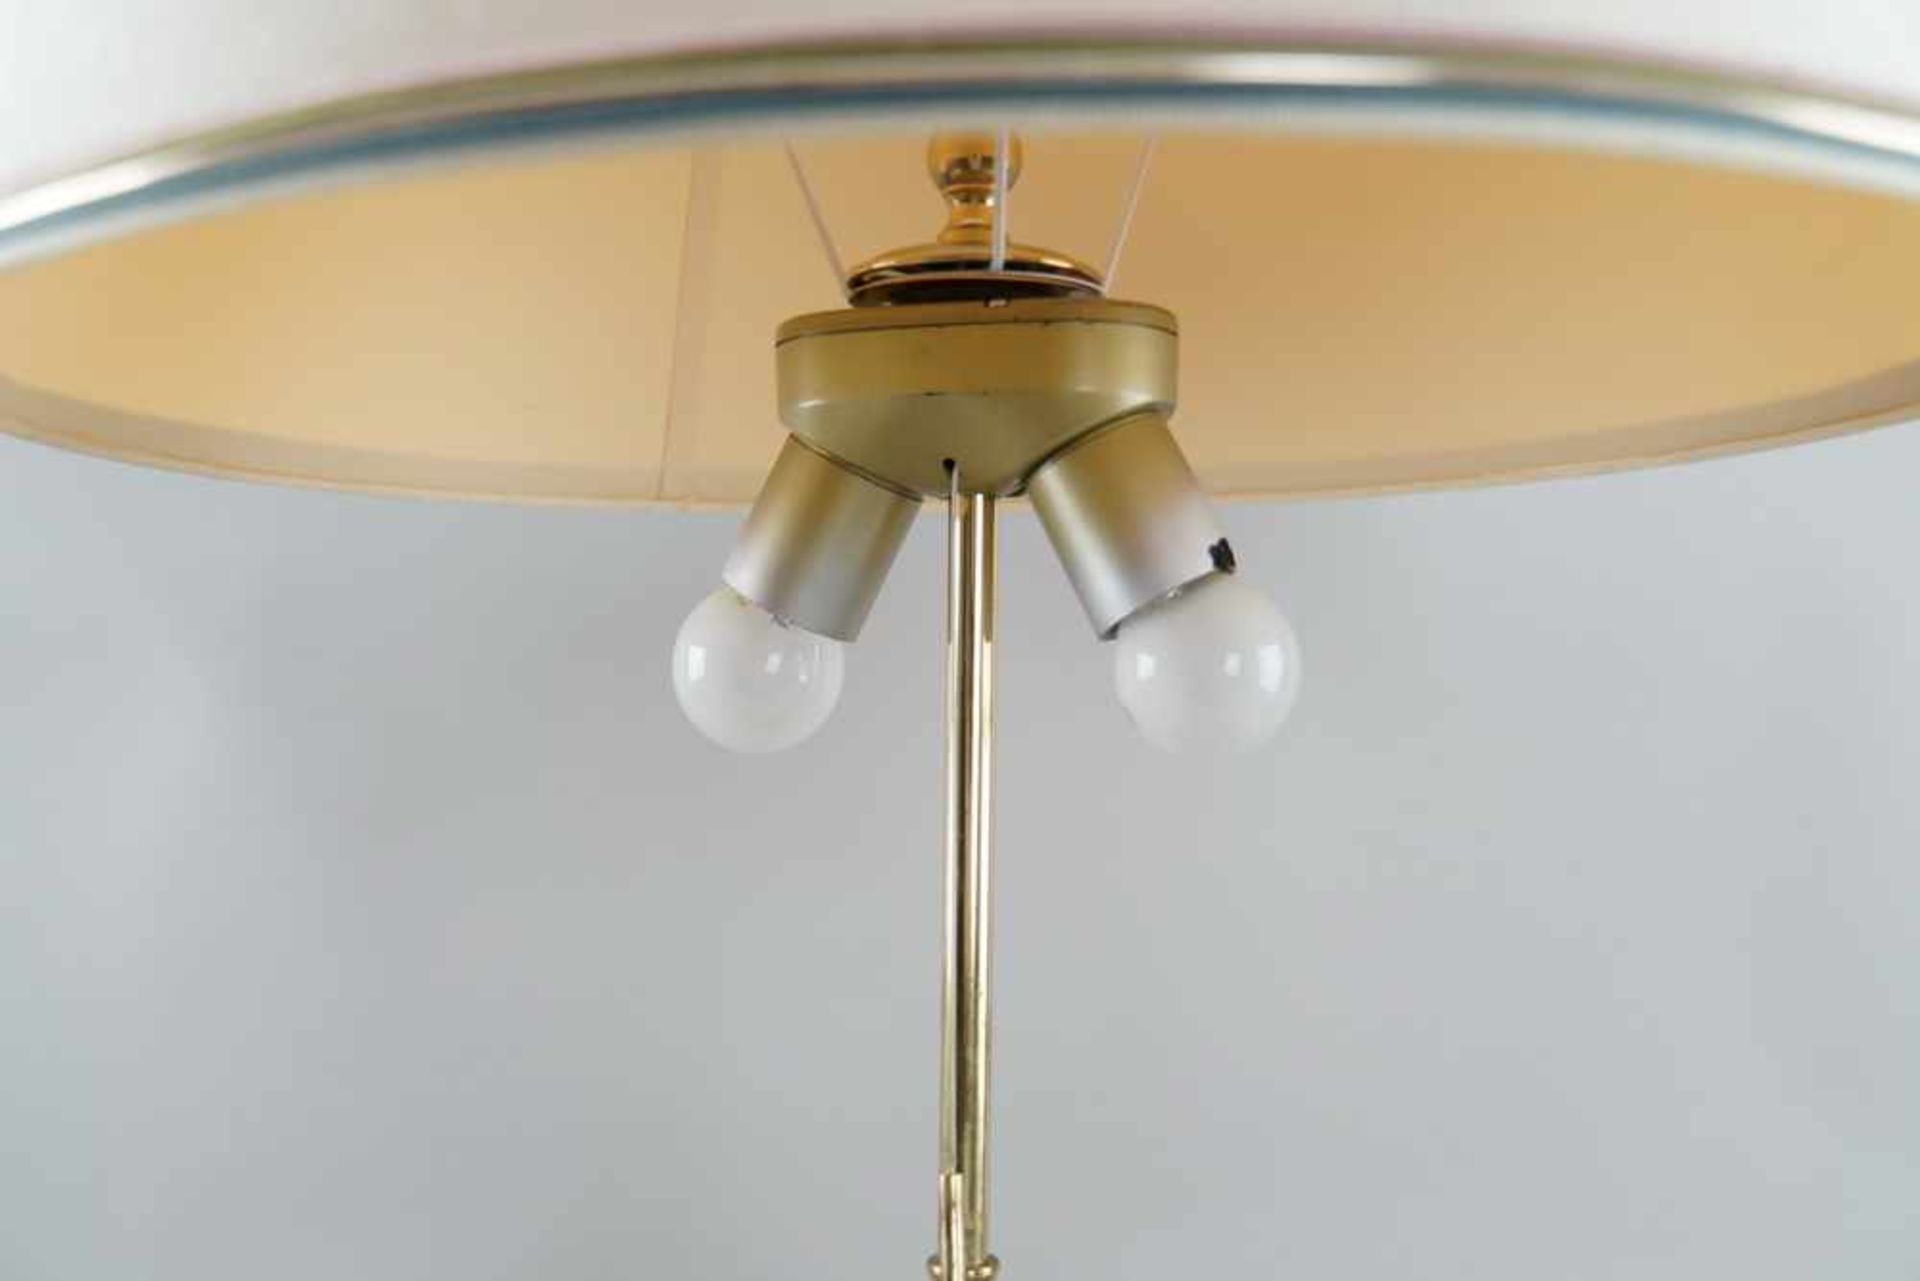 Tischlampe, ehem. asiatische Vase, auf Holzstand, elektrifiziert, mit Schirm, H 90 cm- - -24.00 % - Bild 4 aus 6